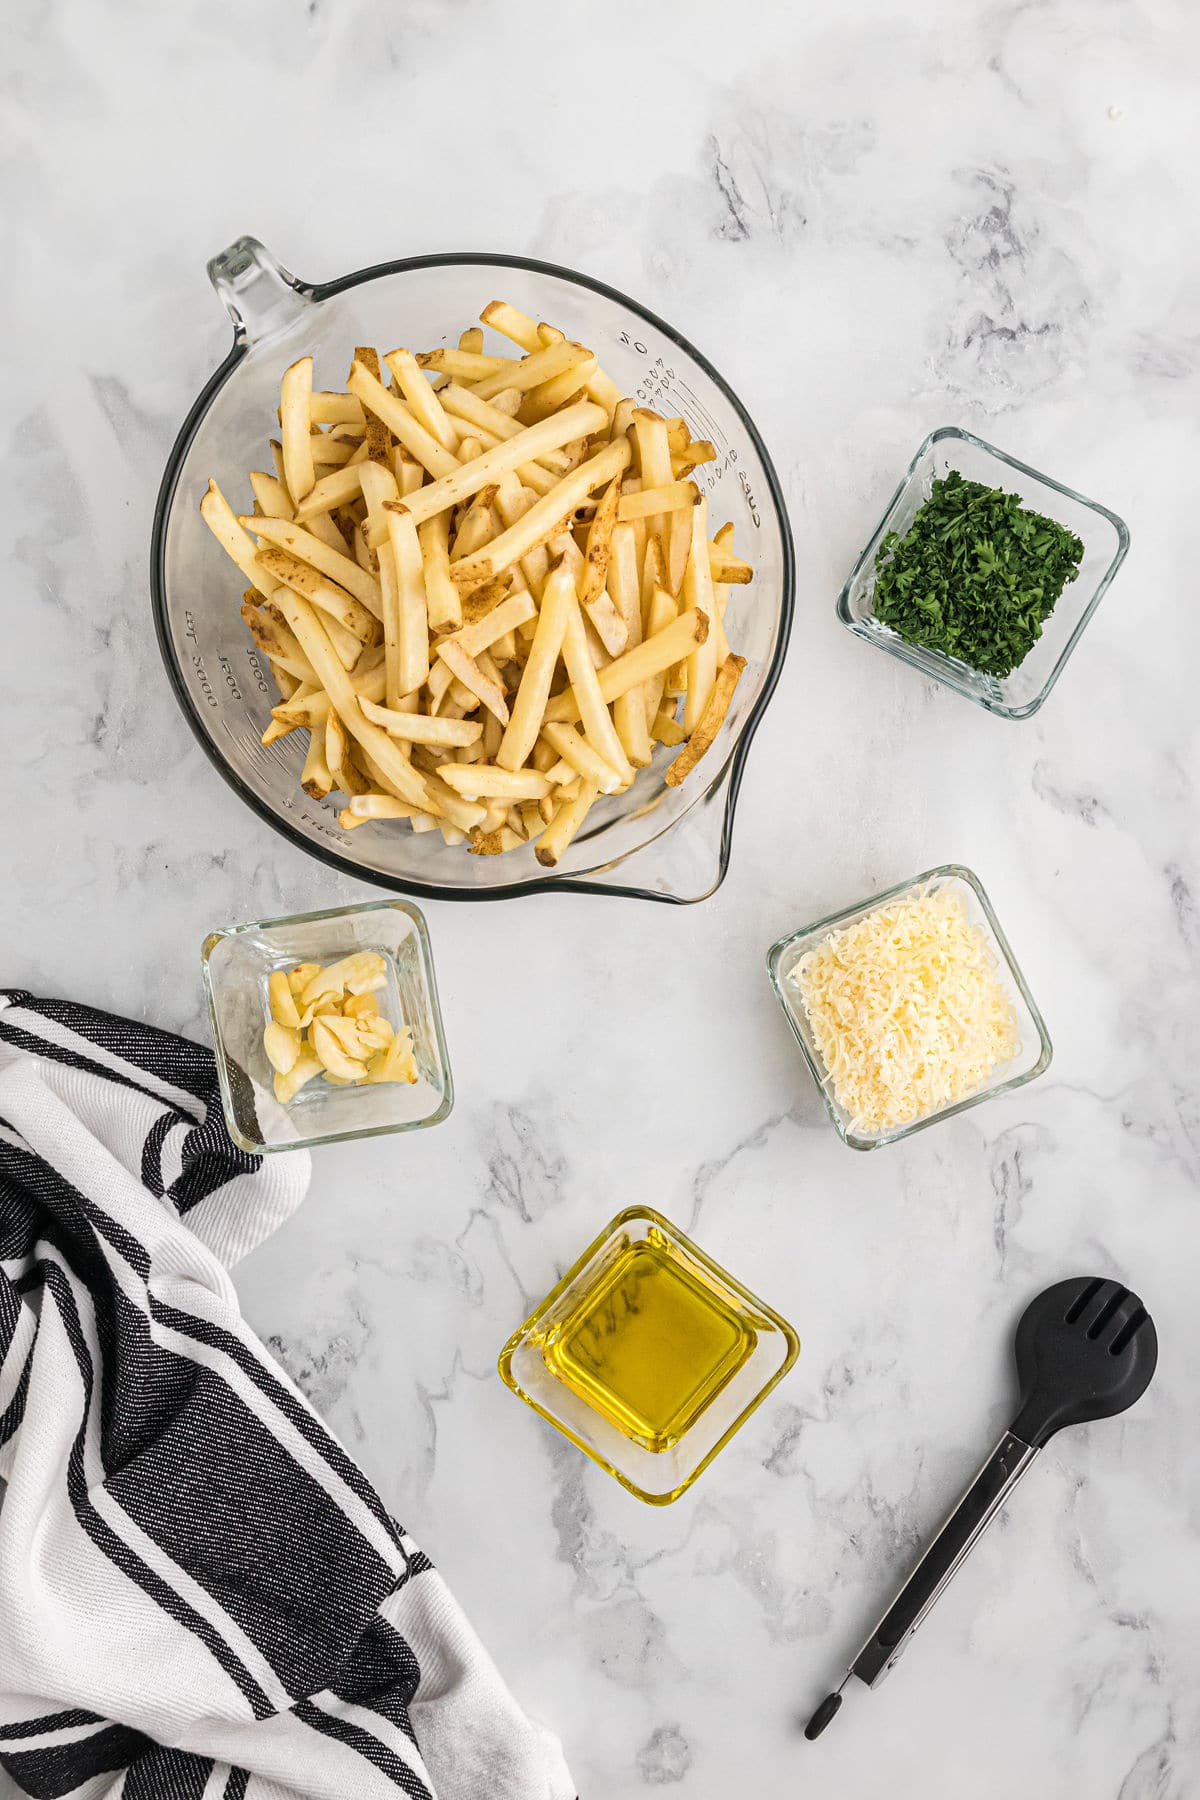 ingredients for garlic parmesan fries.